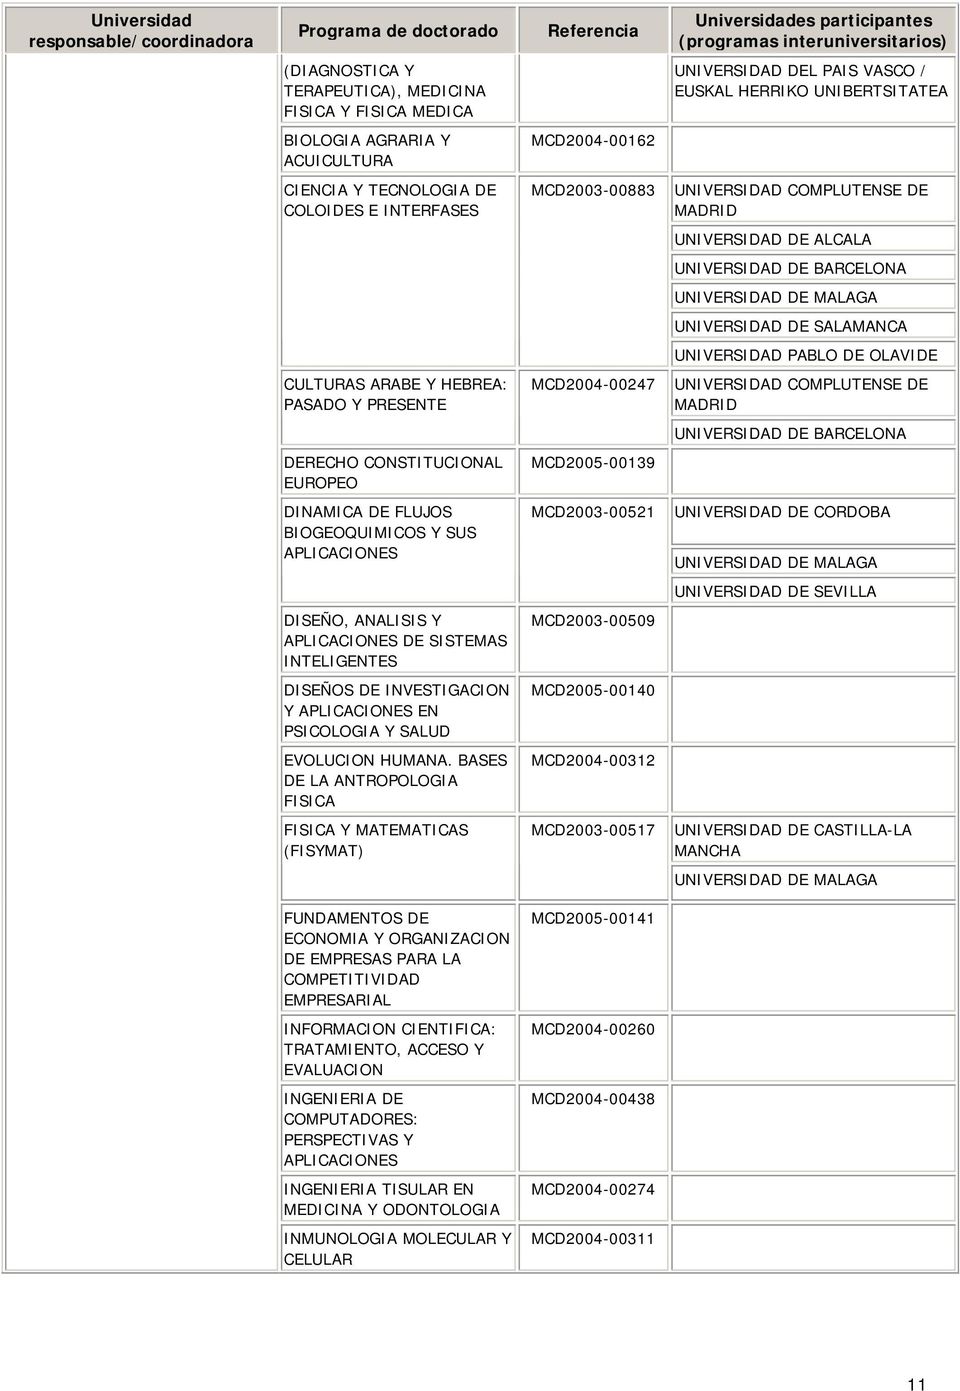 PASADO Y PRESENTE MCD2004-00247 UNIVERSIDAD COMPLUTENSE DE UNIVERSIDAD DE BARCELONA DERECHO CONSTITUCIONAL EUROPEO MCD2005-00139 DINAMICA DE FLUJOS BIOGEOQUIMICOS Y SUS APLICACIONES MCD2003-00521